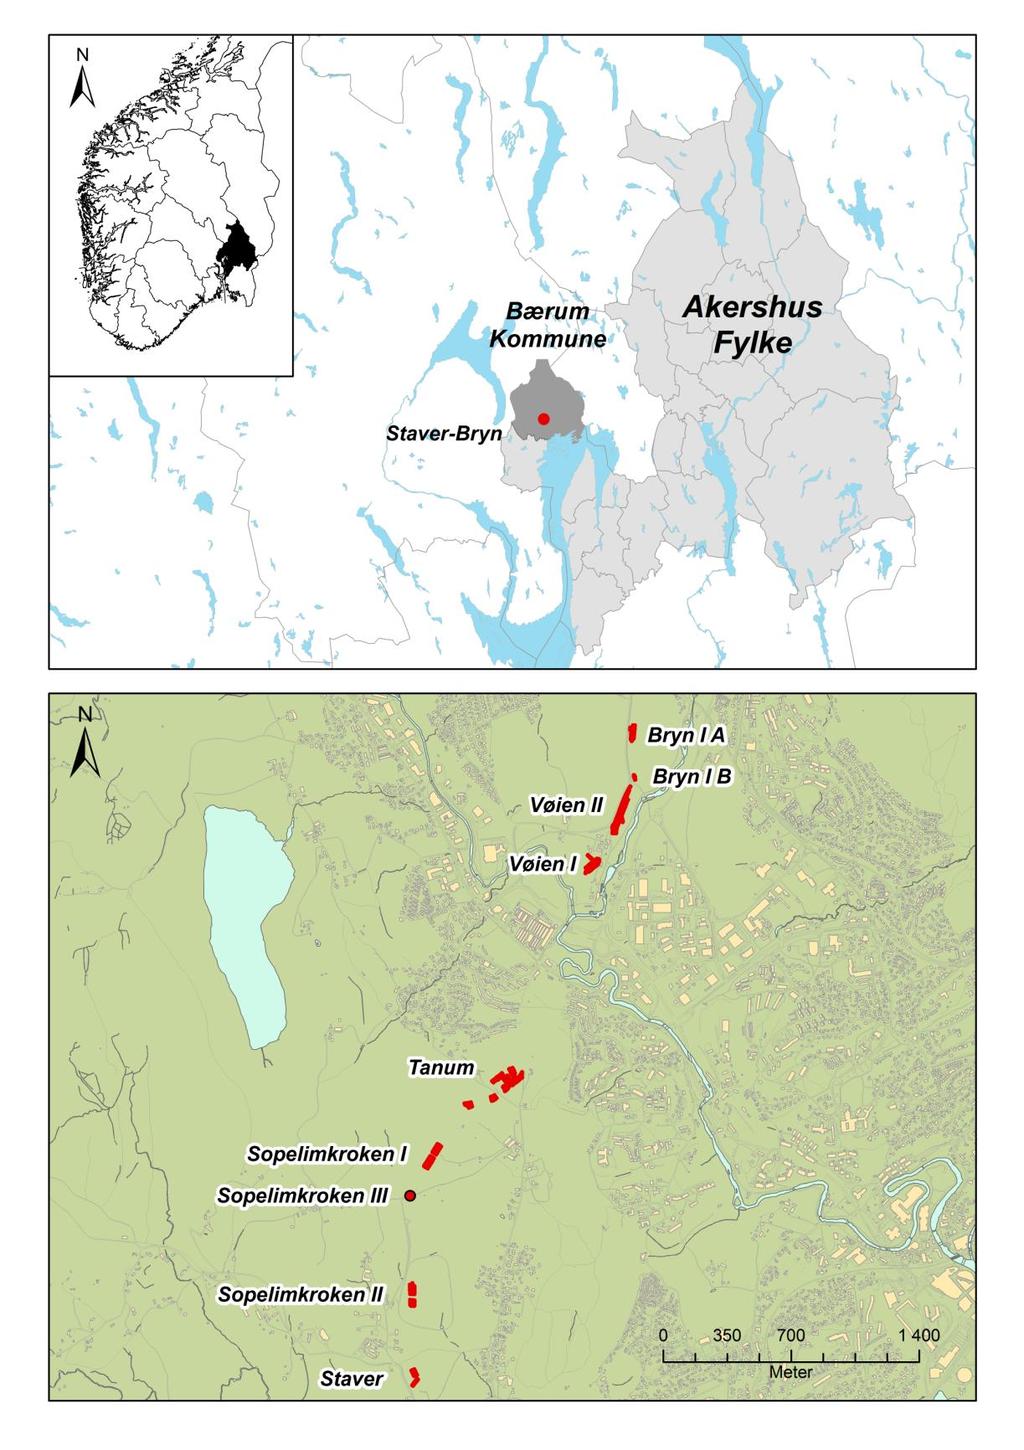 Figur 1: Øverst: Oversiktskart over Sør-Norge og Bærum med prosjektområdet avmerket.